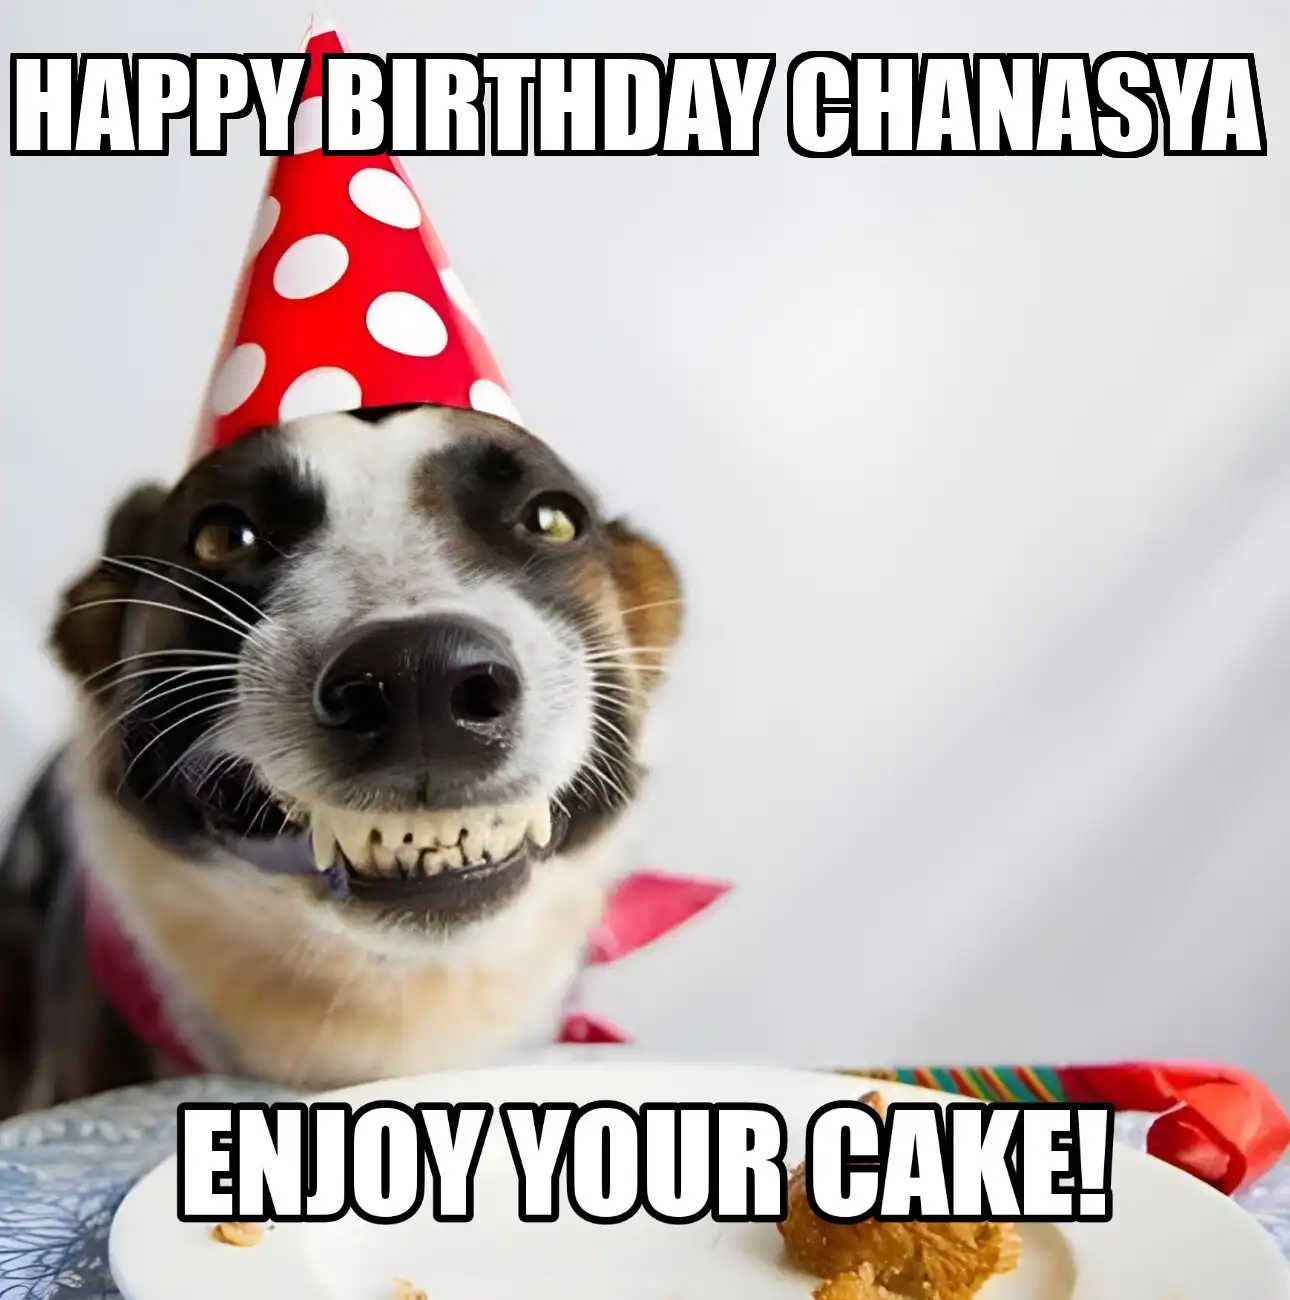 Happy Birthday Chanasya Enjoy Your Cake Dog Meme